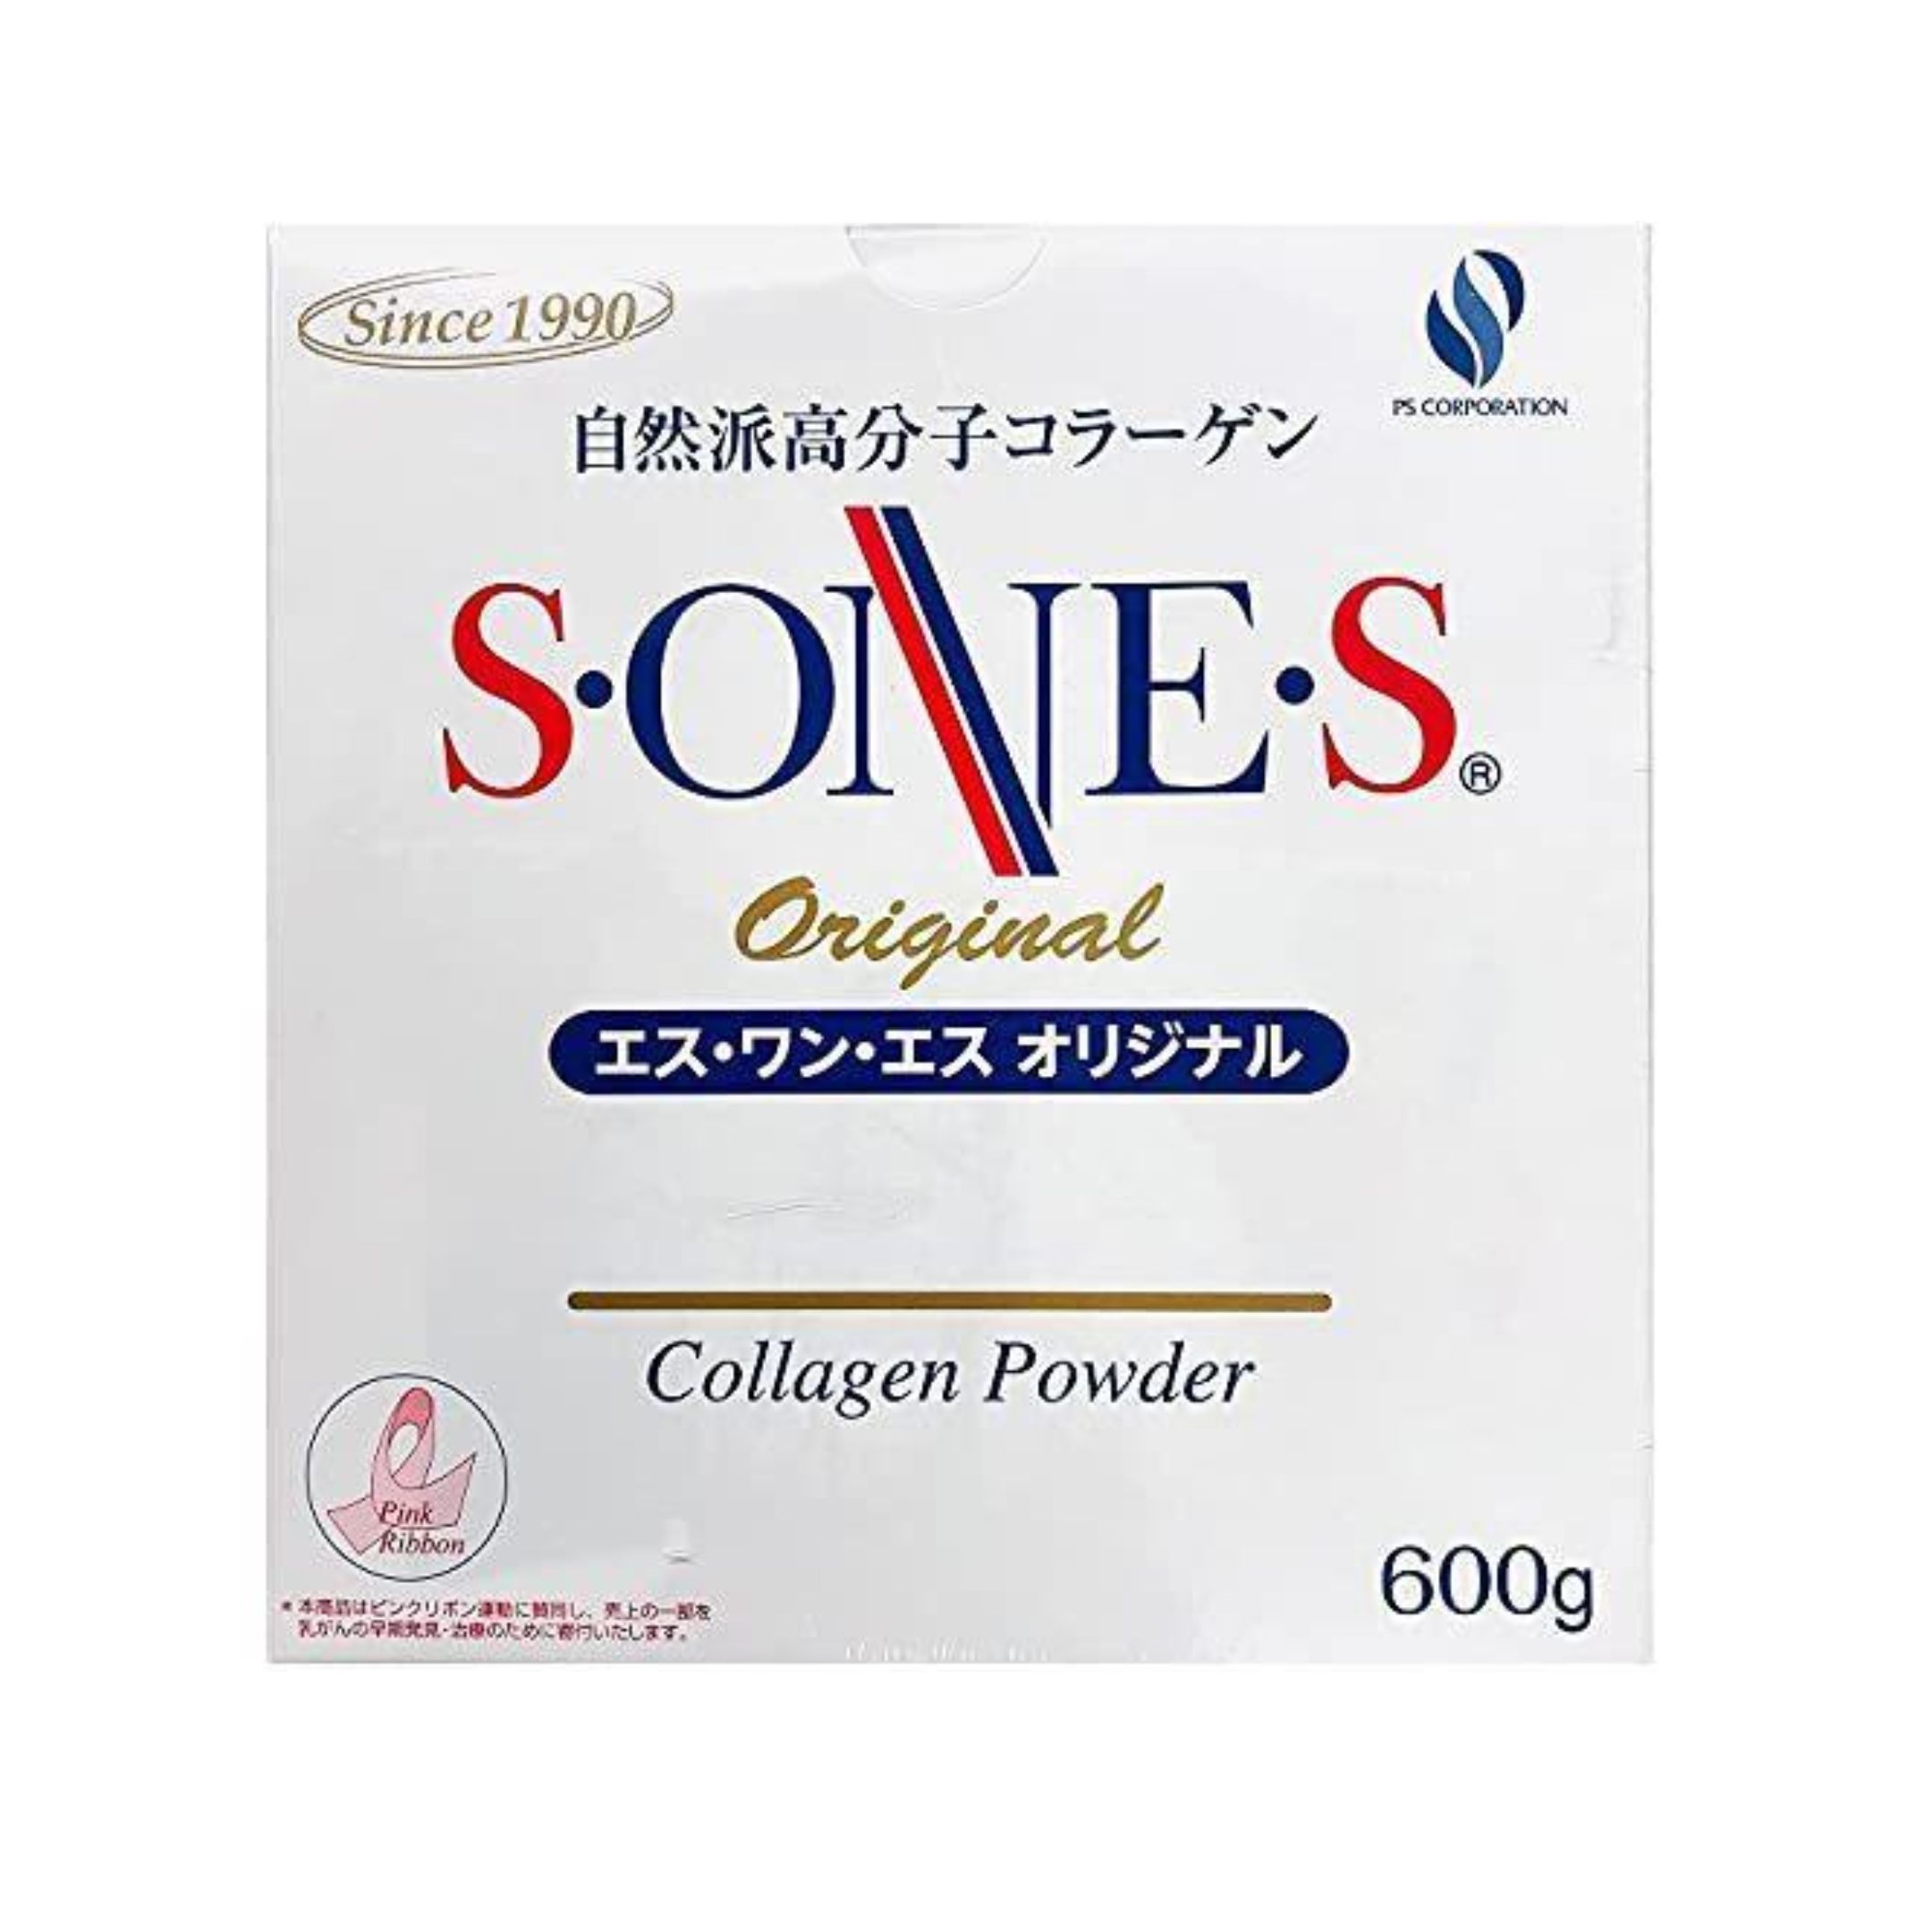 【あす楽】SONES エスワンエス オリジナル コラーゲン 600g 自然派高分子コラーゲン コラーゲンパウダー サプリメント 美容